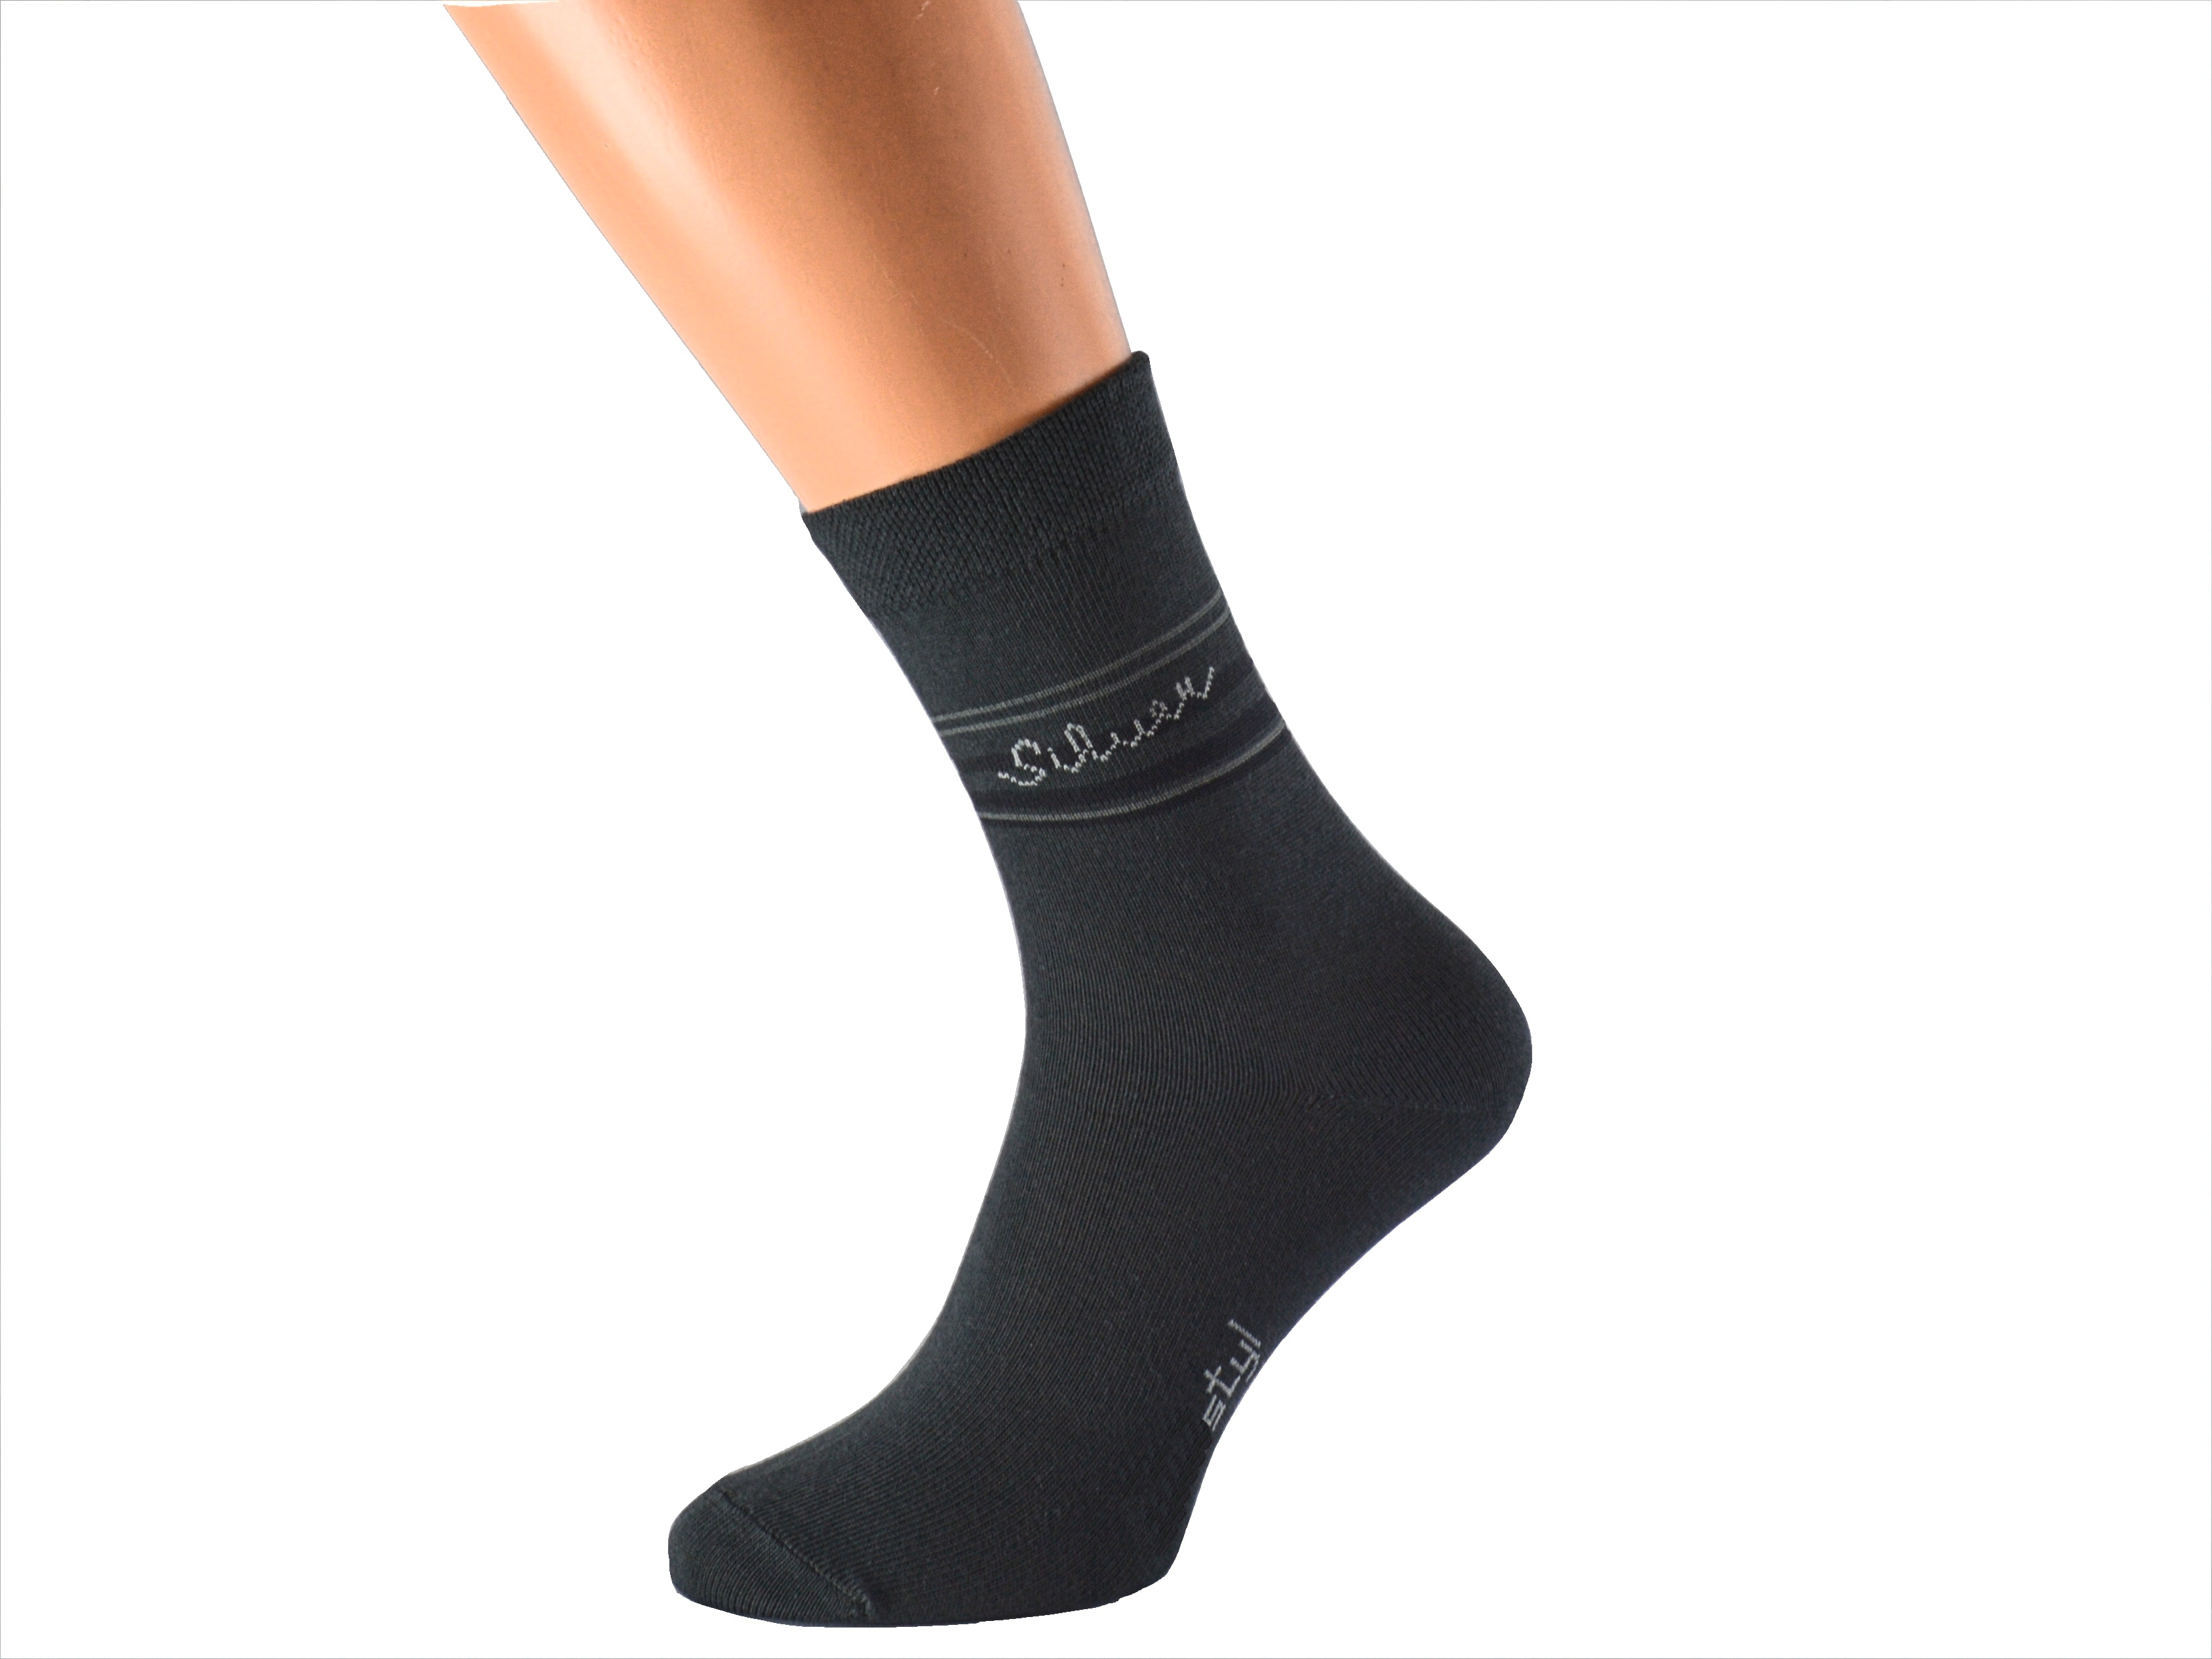 Ponožky se stříbrem proti pocení SILVER KUKS Barva: Tmavě šedé, Velikost: EUR 36-38 (UK 4-5)